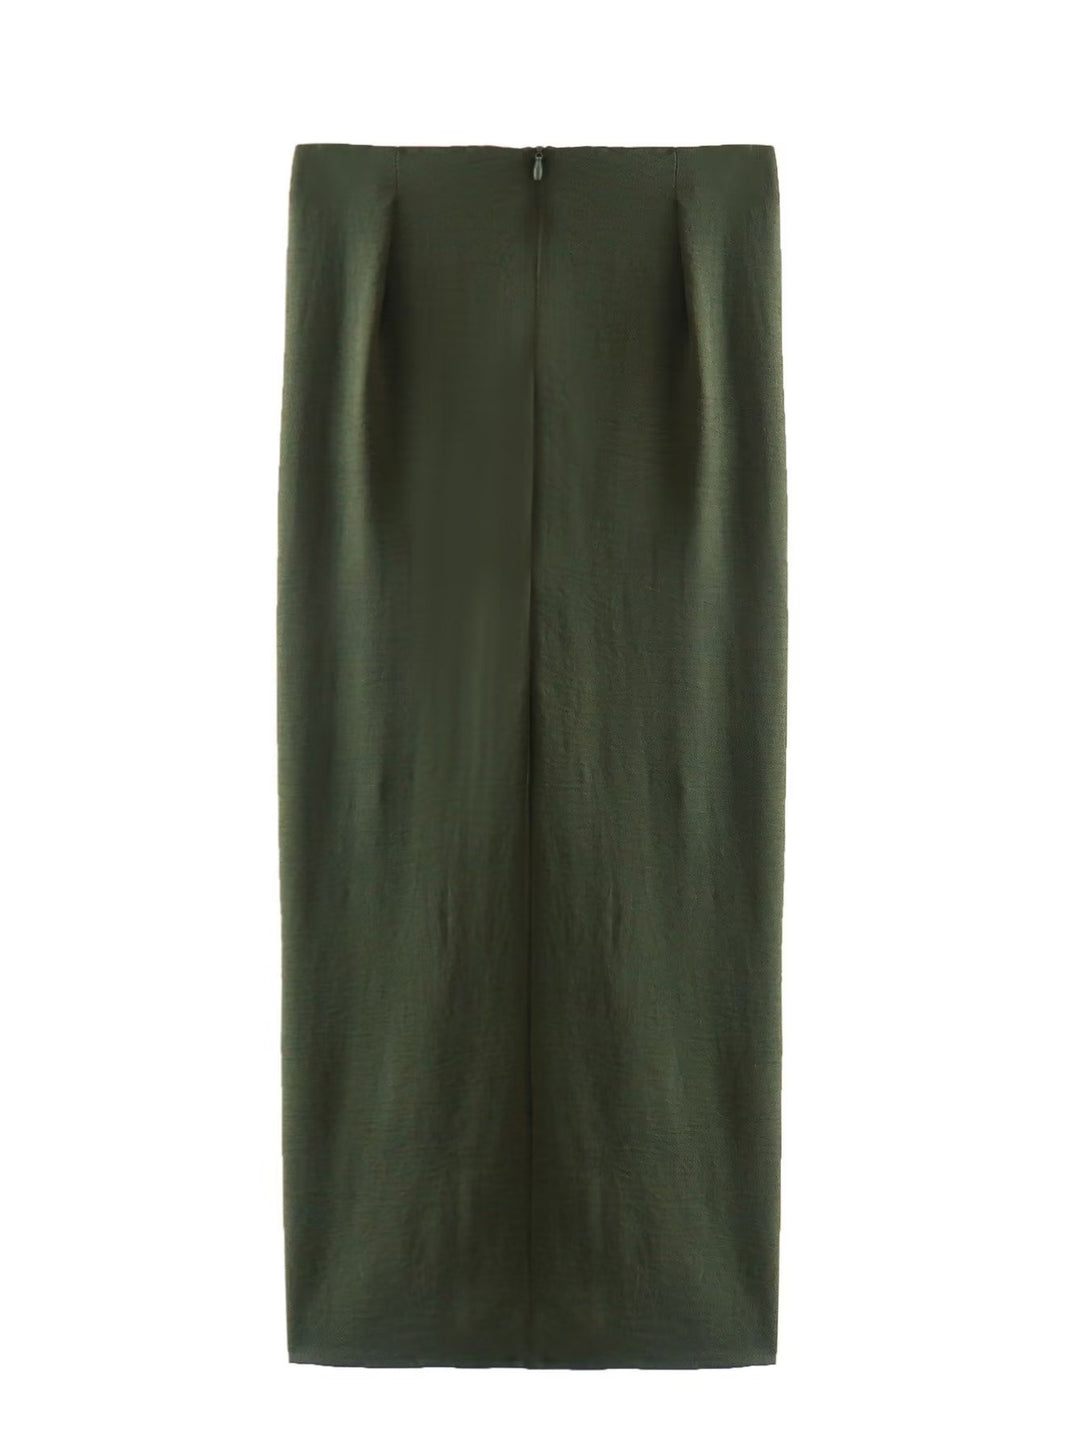 Ruched plain elegant skirt in hunter green